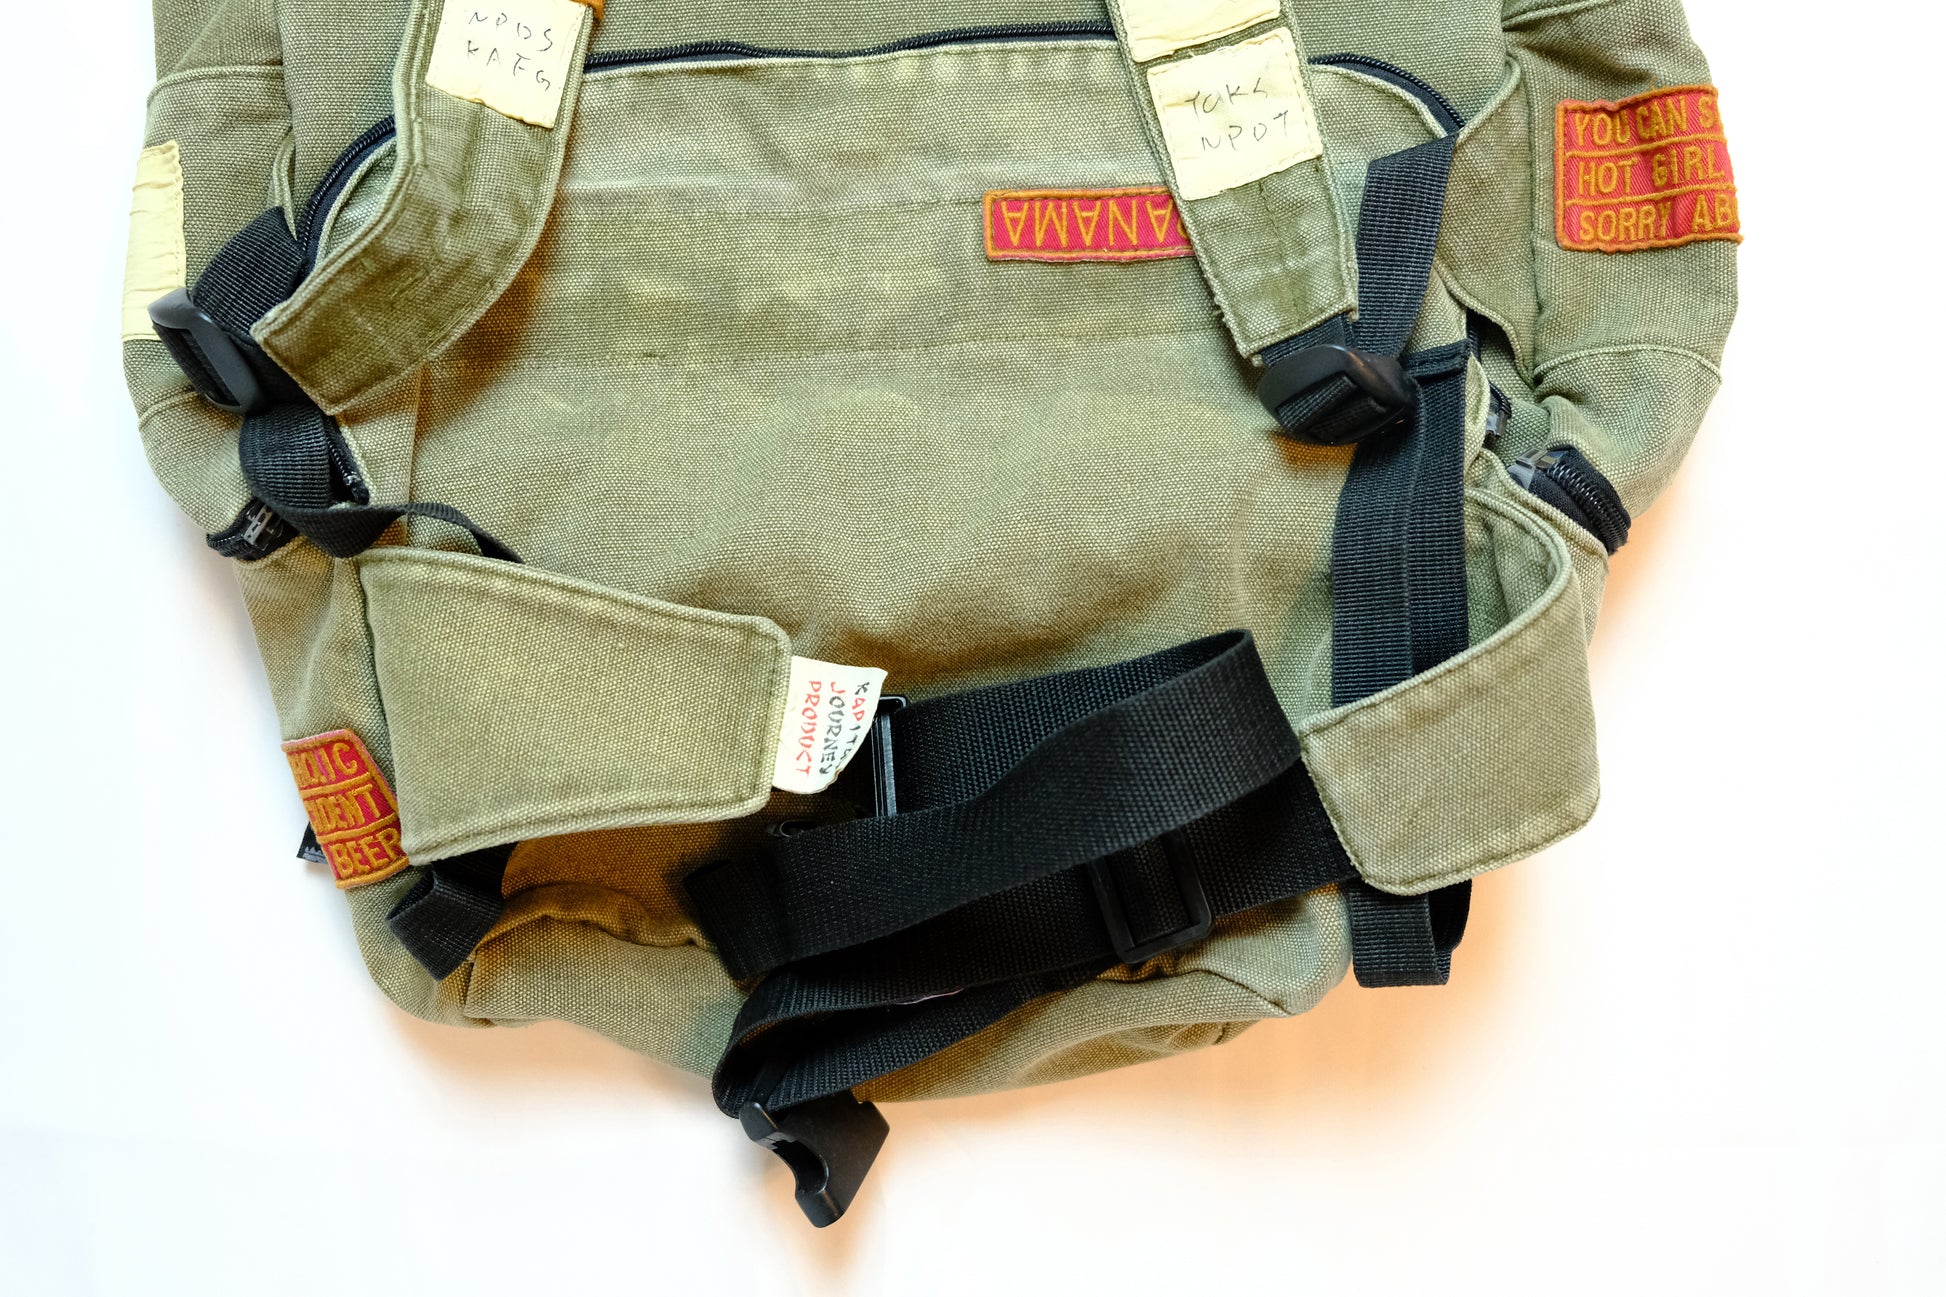 Kapital Military Canvas Shoulder Bag –